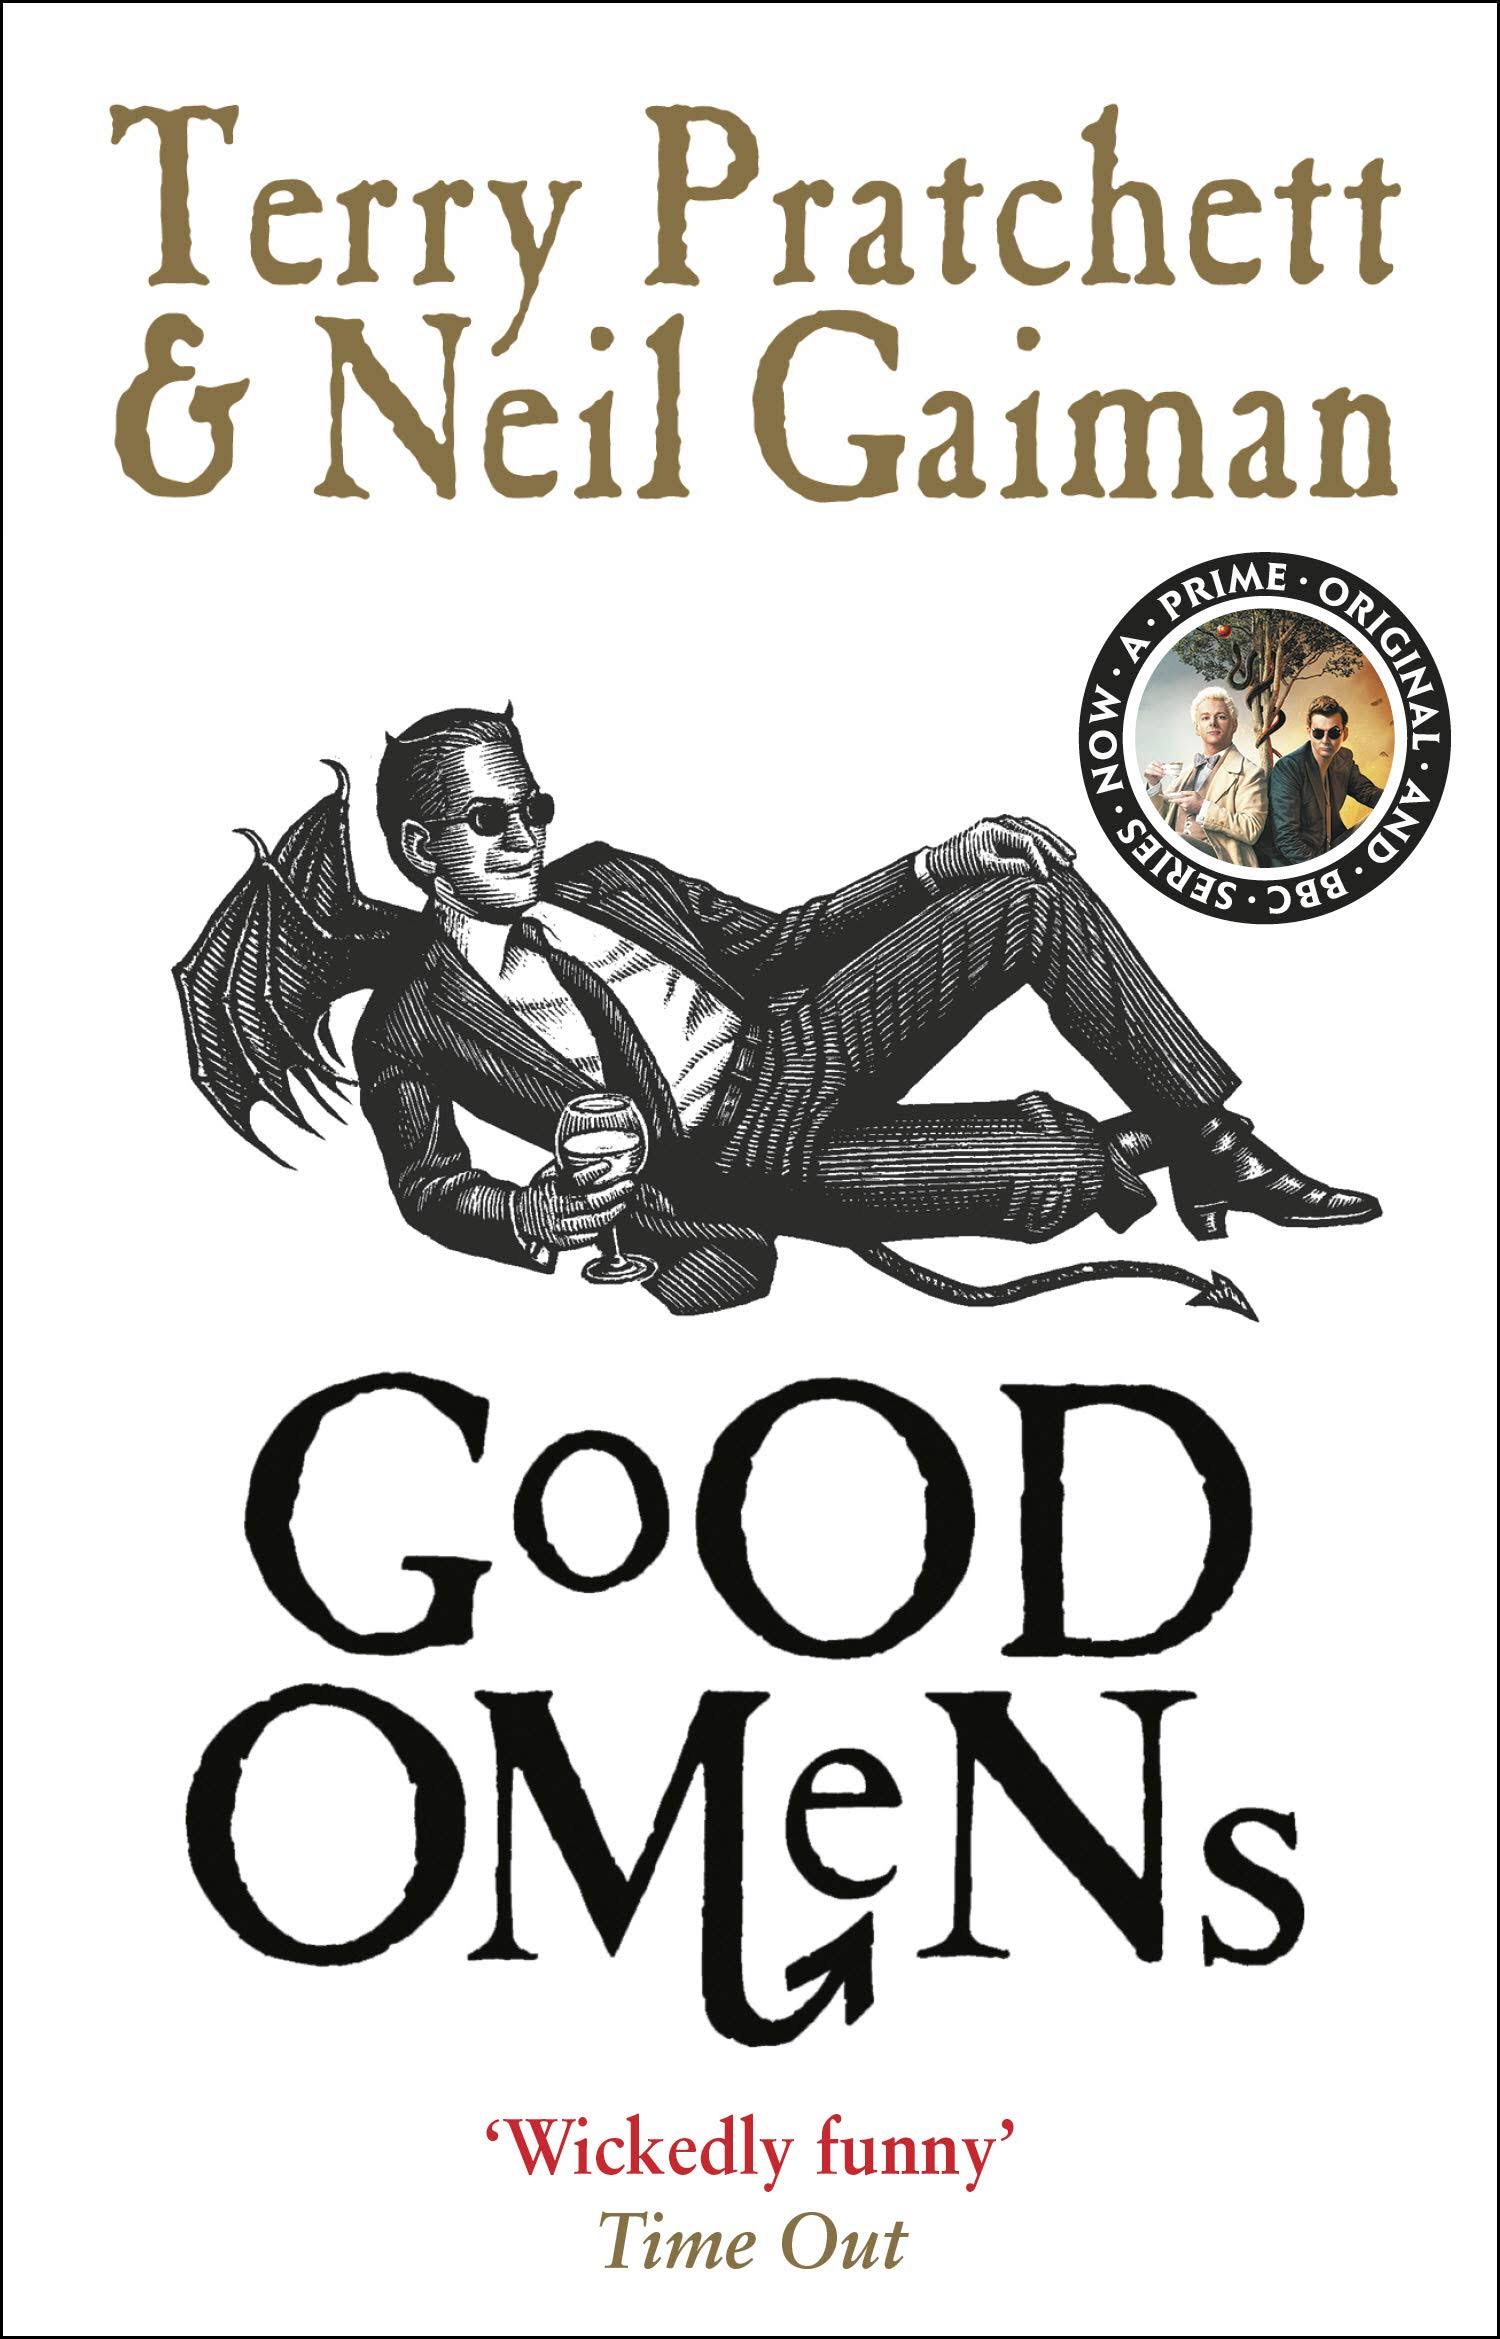 Good Omens - Terry Pratchett and Neil Gaiman